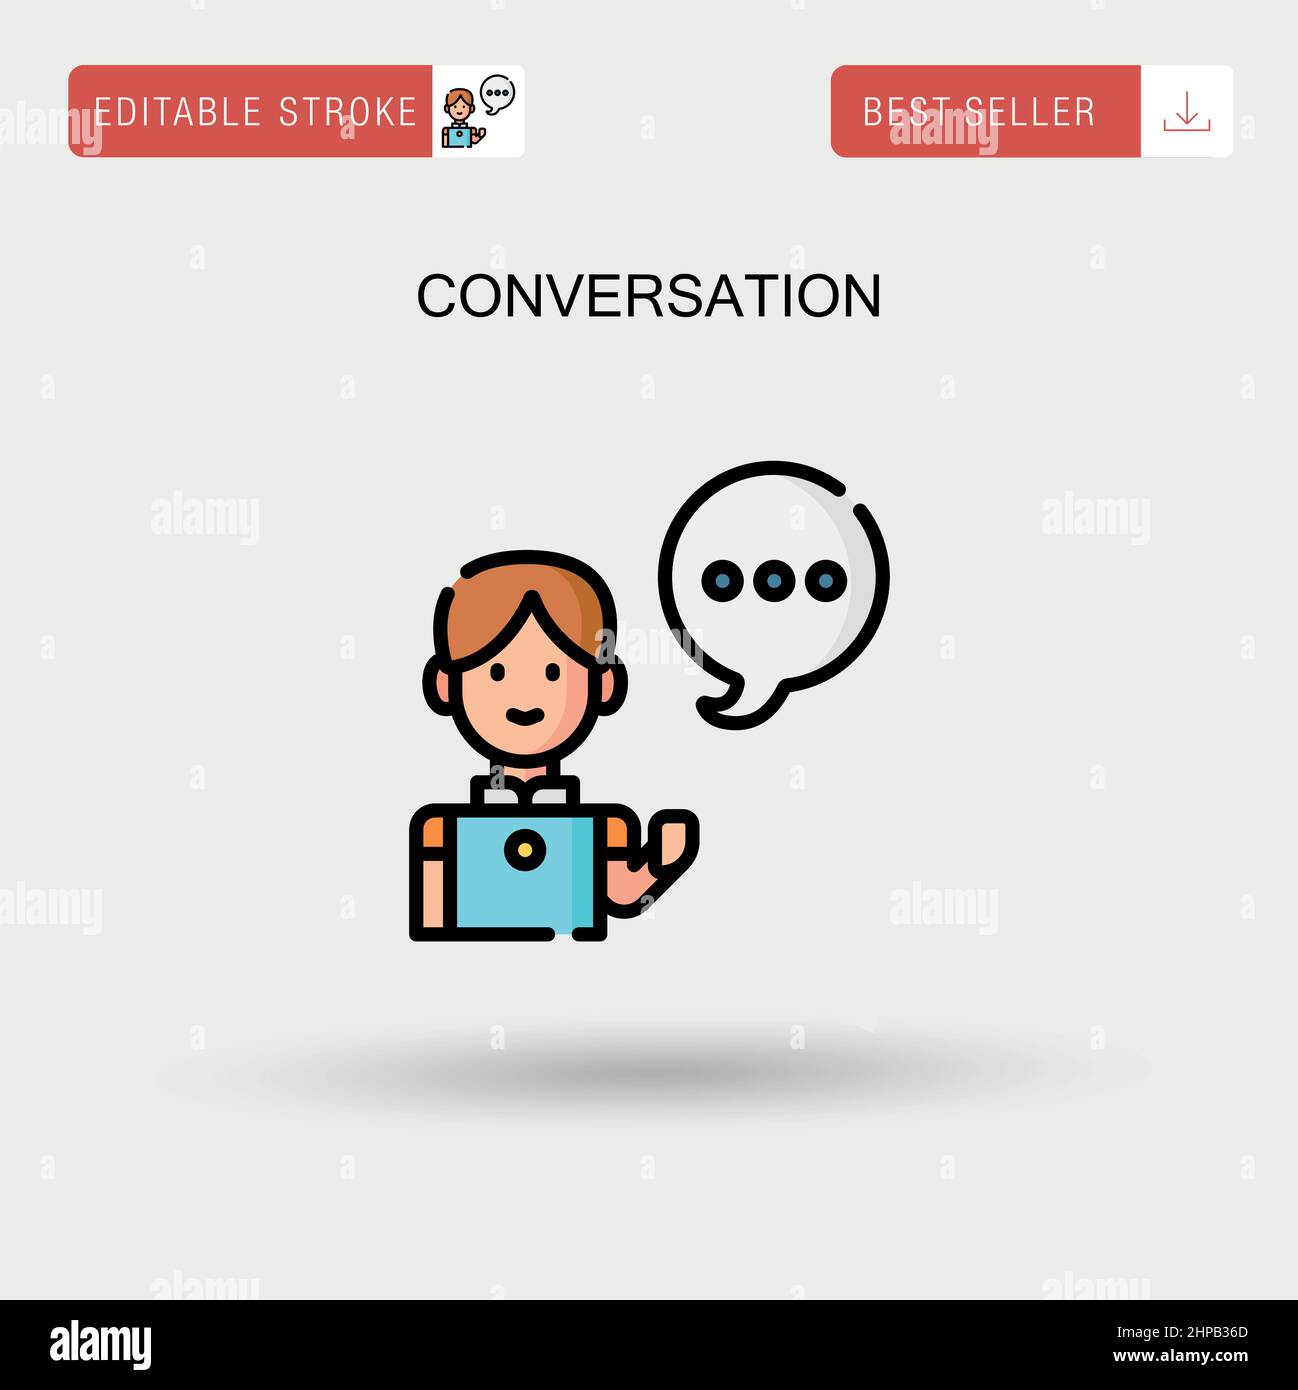 Conversation Simple vector icon. Stock Vector